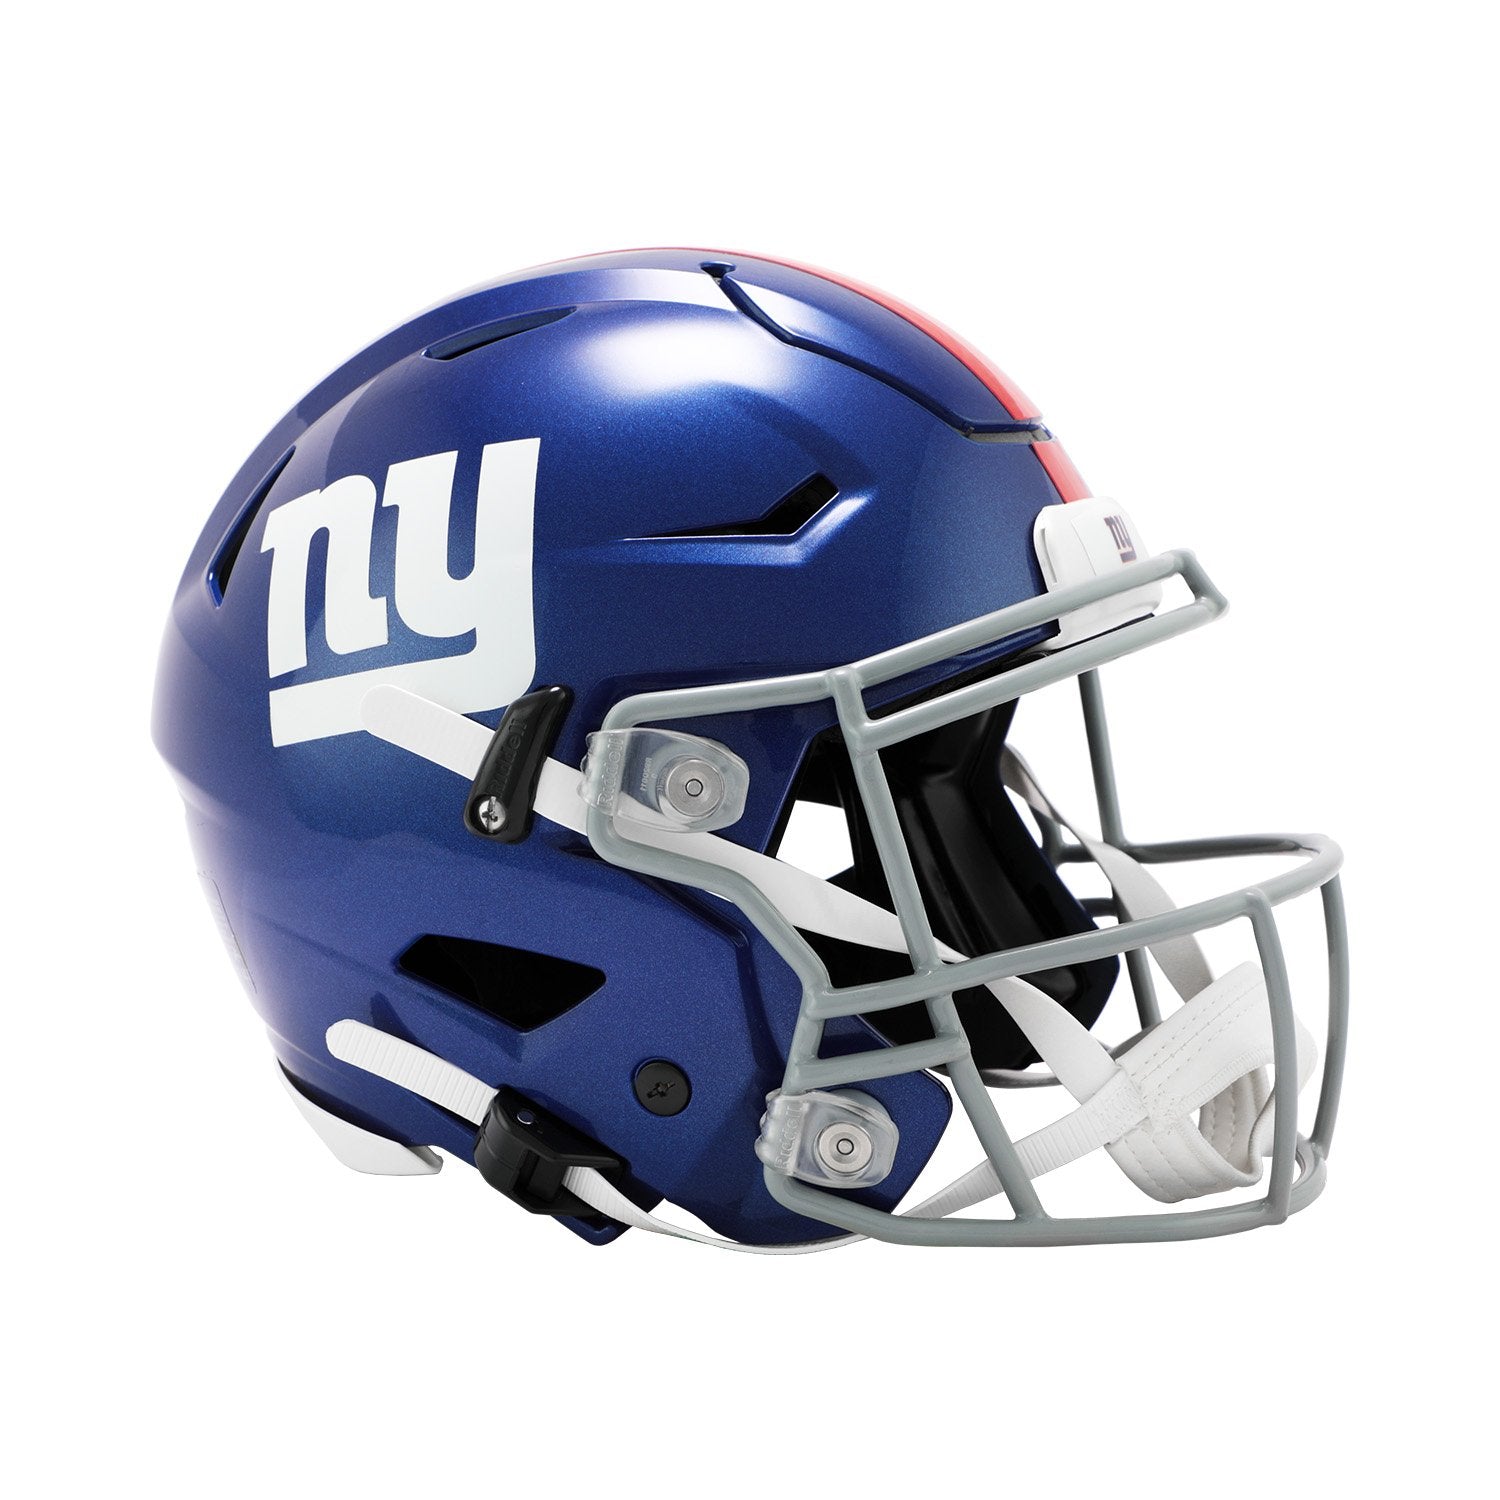 New York Giants Authentic SpeedFlex Football Helmet Riddell The